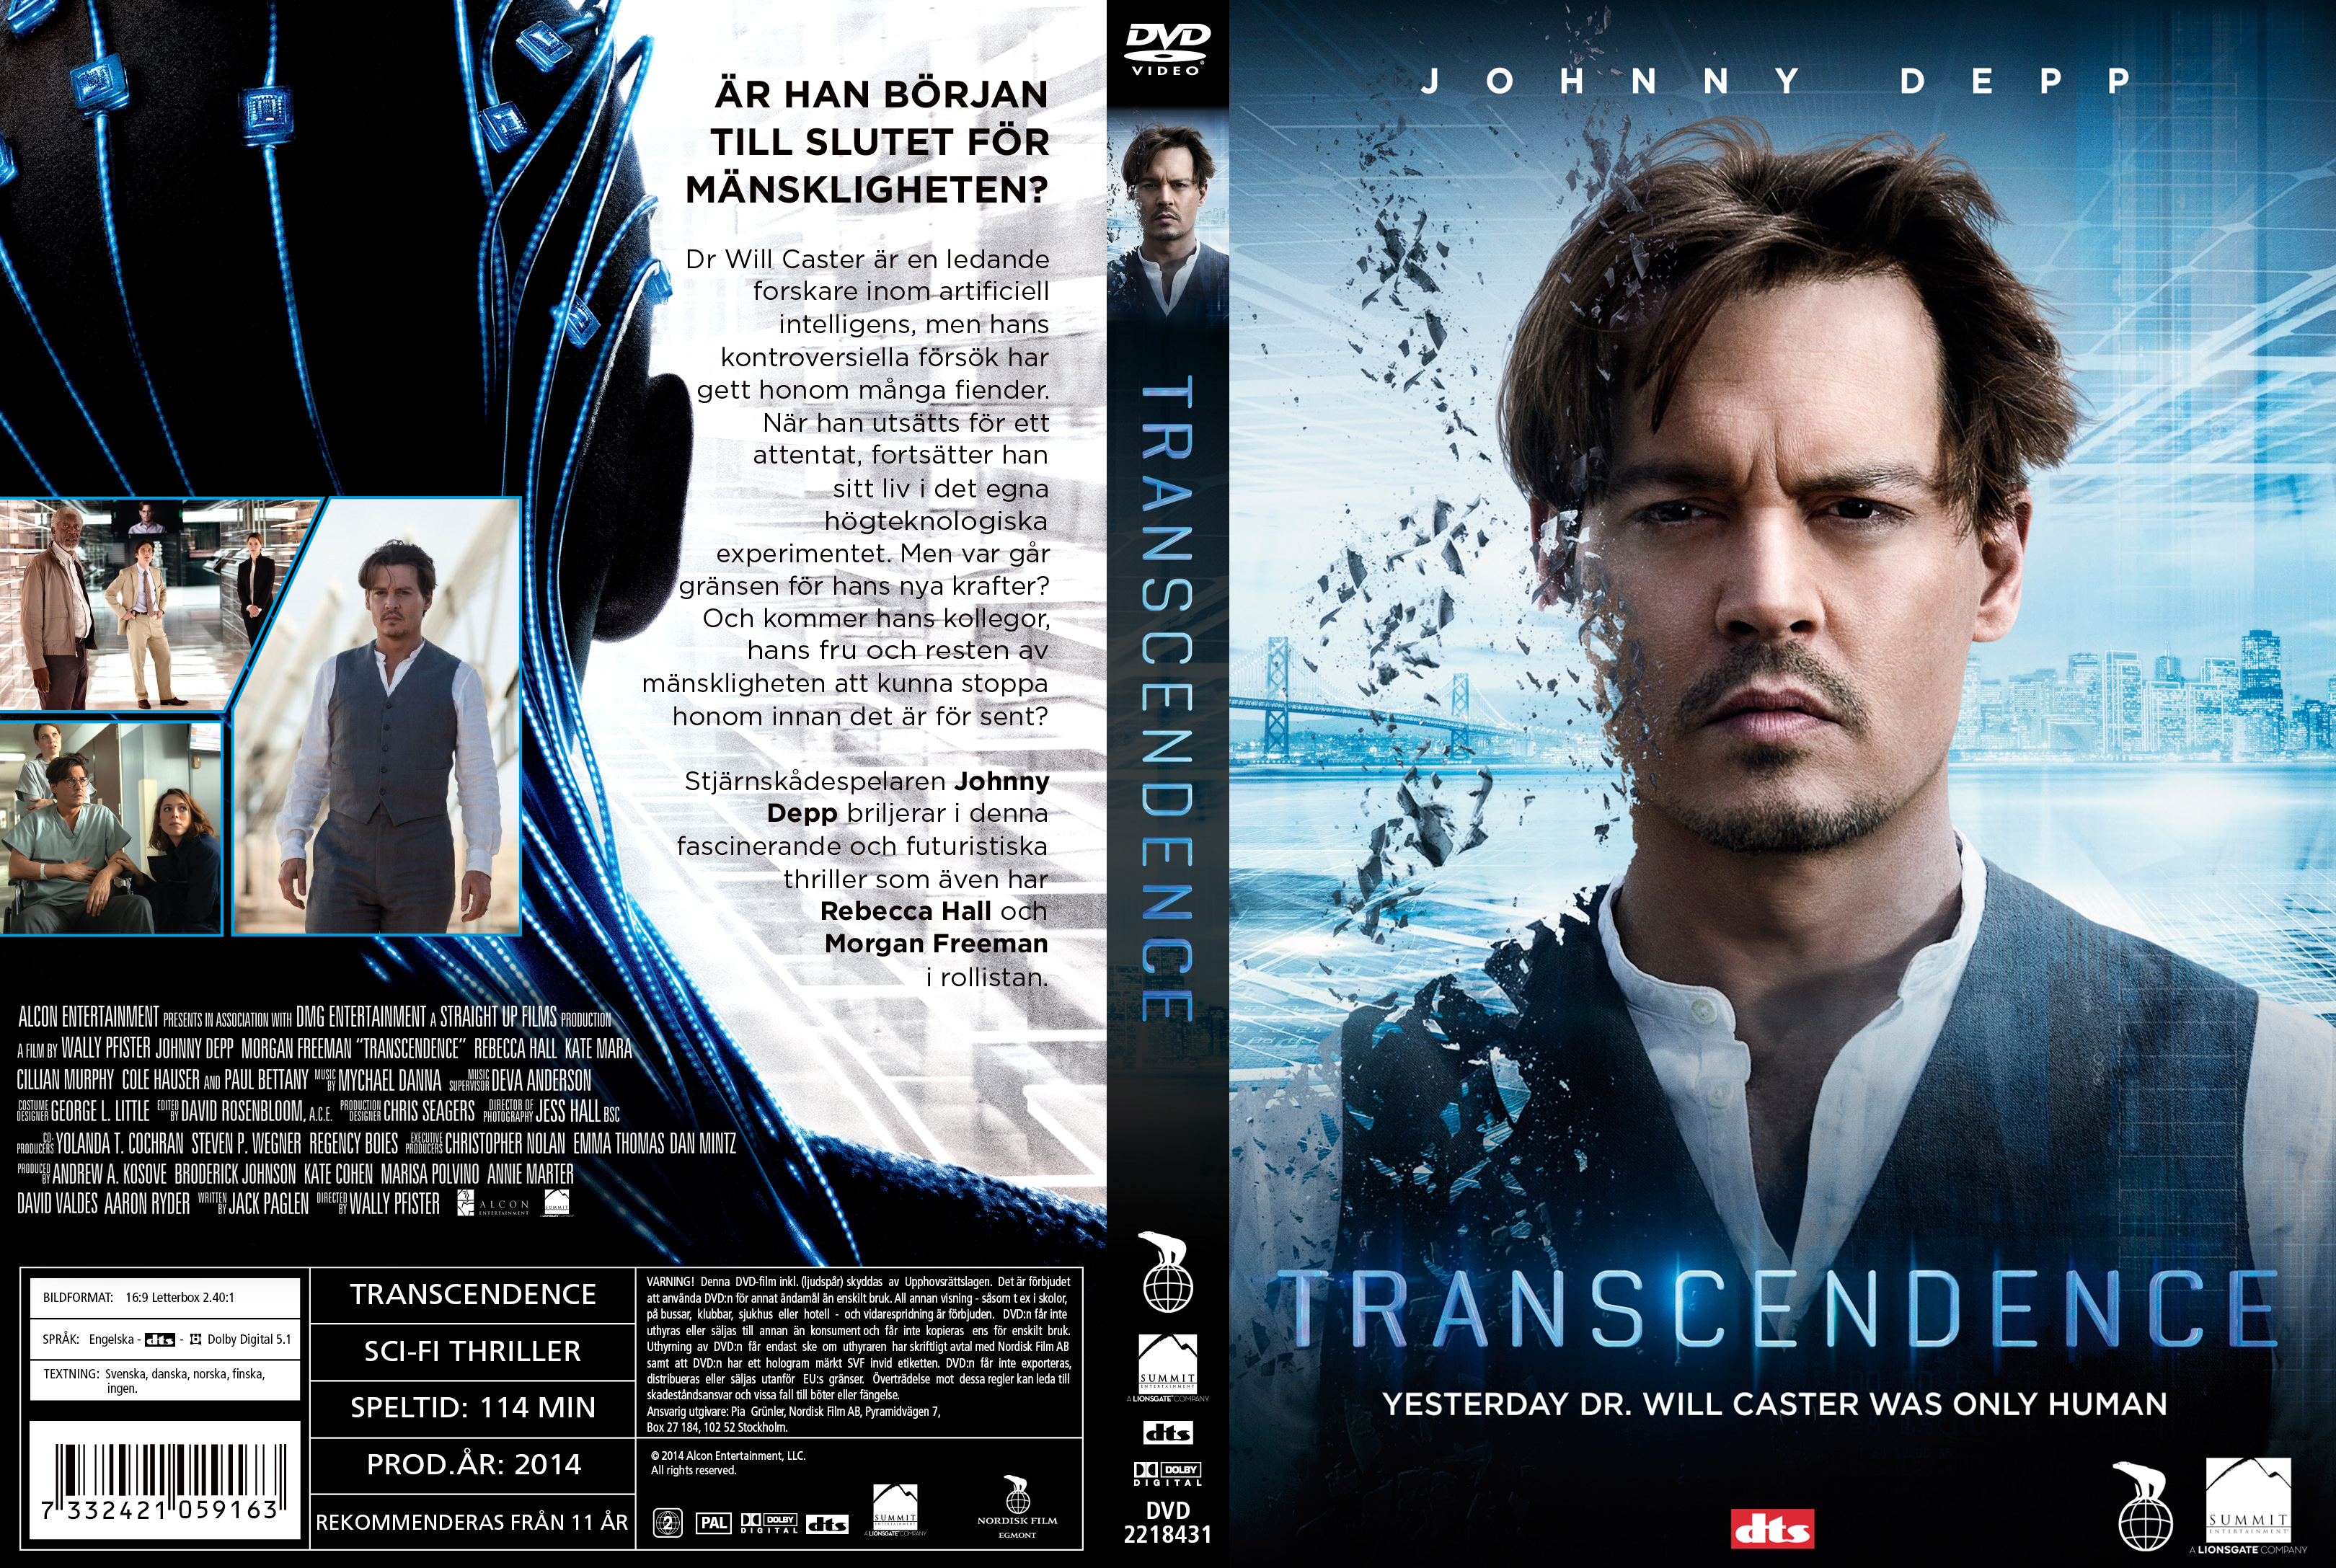 transcendence movie dvd cover